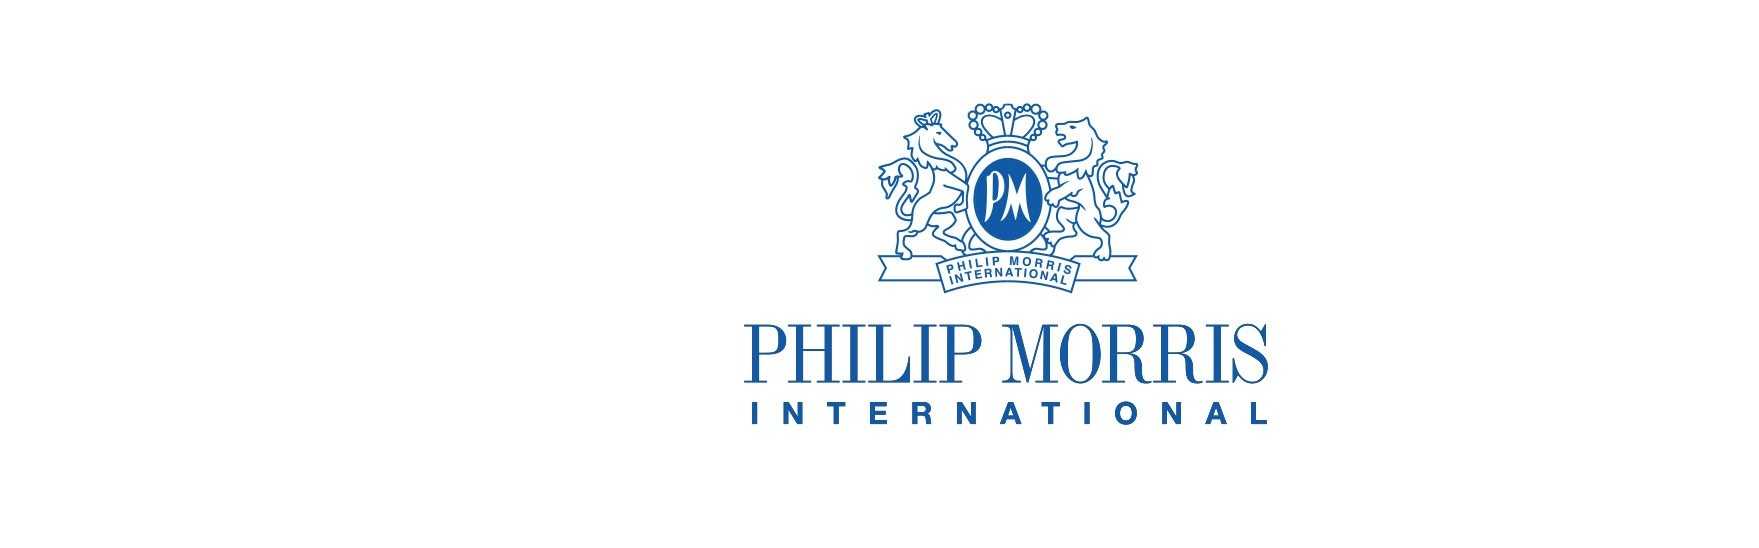 Сайт филип моррис. Philip Morris logo. PMI Philip Morris International. Philip Morris сигареты логотип.